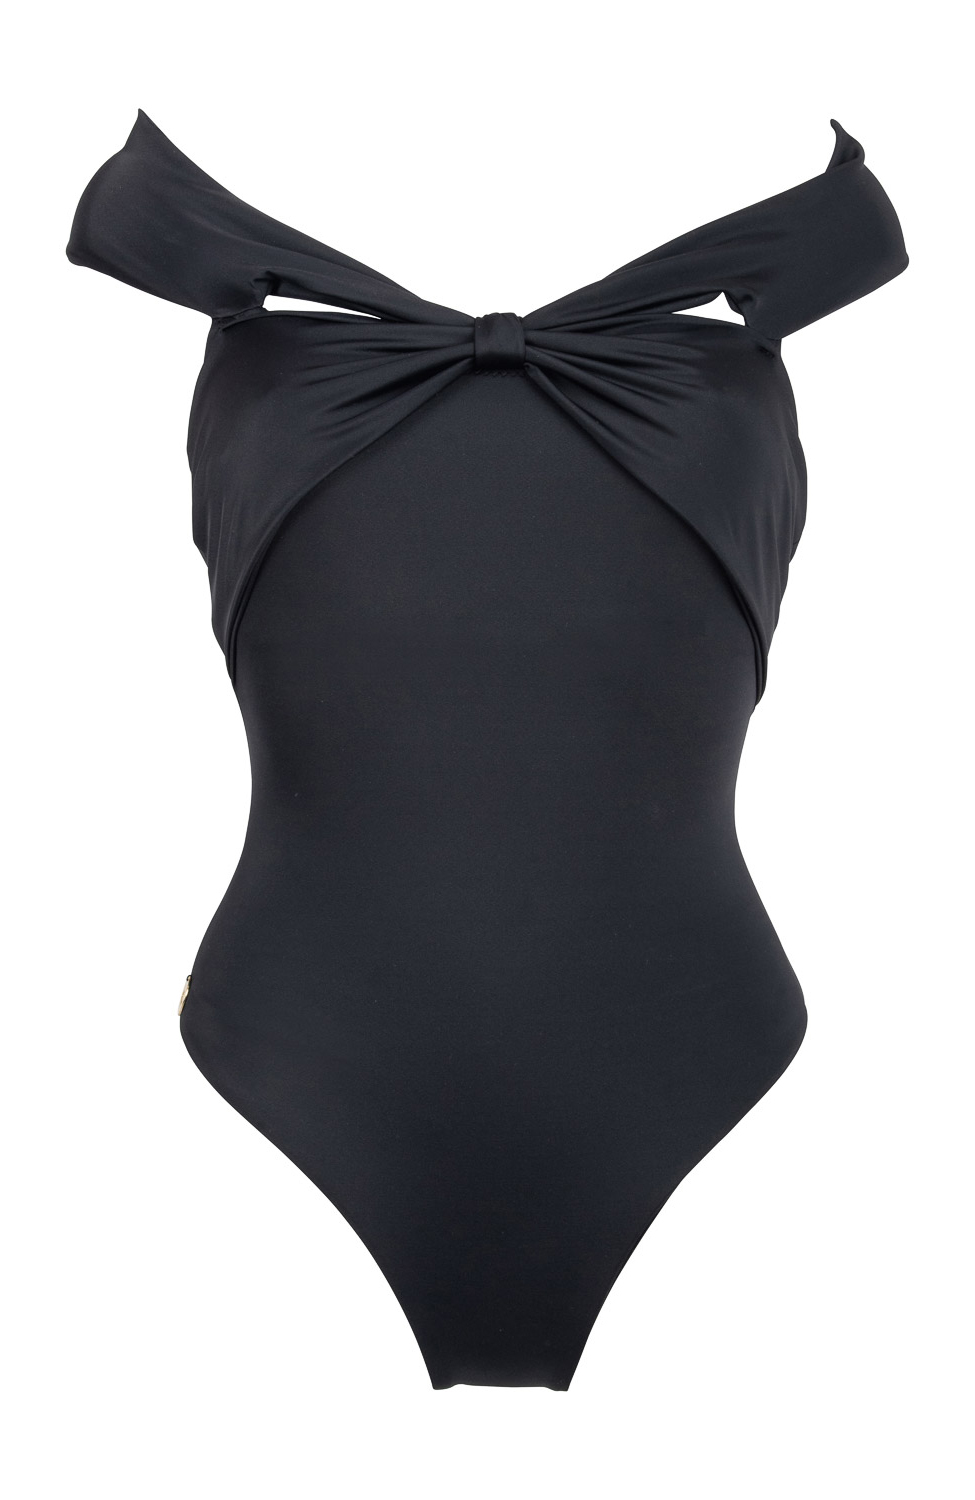 MARITIMUM Erato Black Swimsuit | The Greek Designers